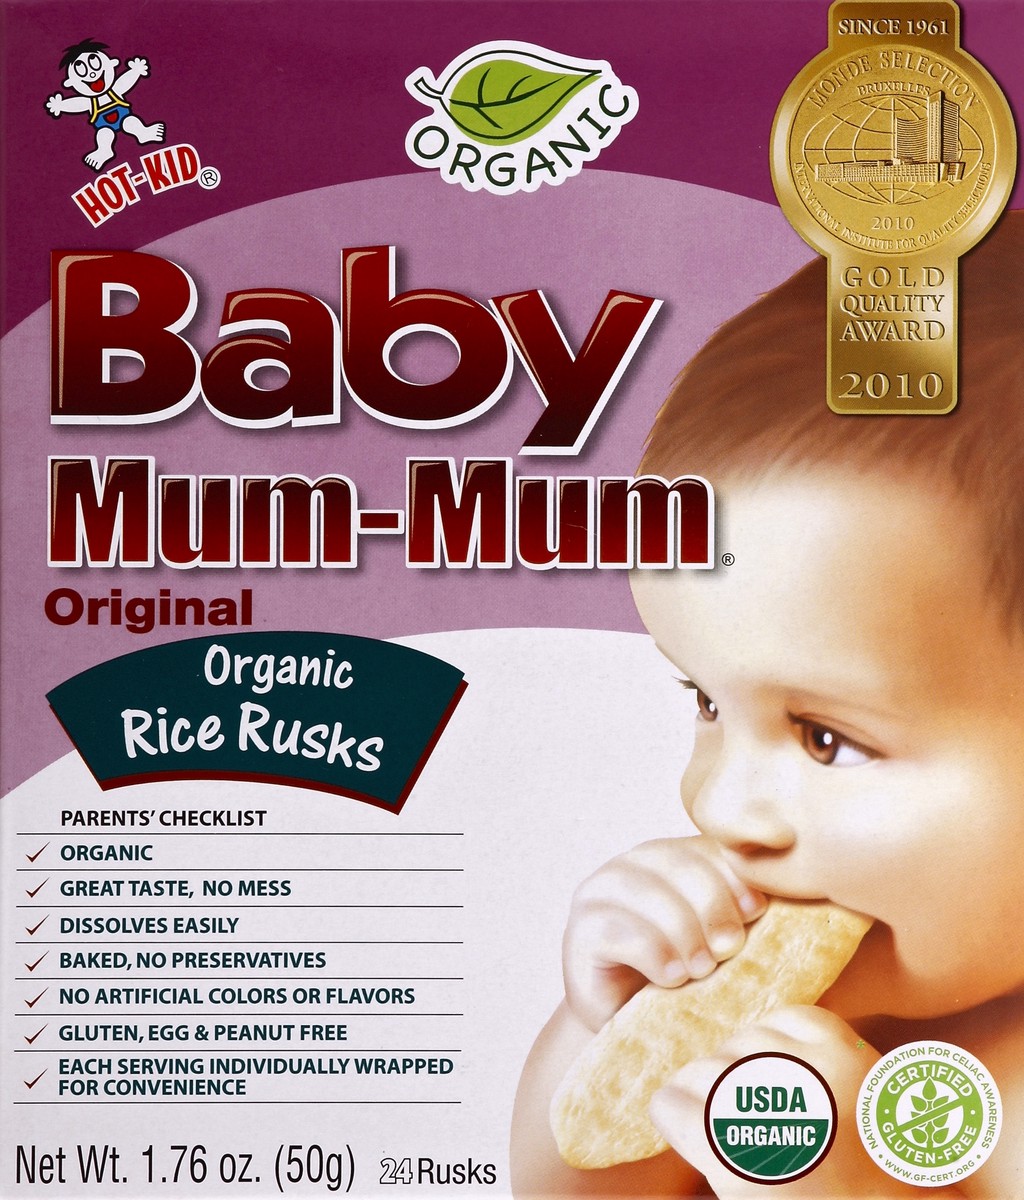 slide 3 of 5, Hot-Kid Baby Mum-Mum Original Organic Rice Rusks, 24 ct; 1.76 oz